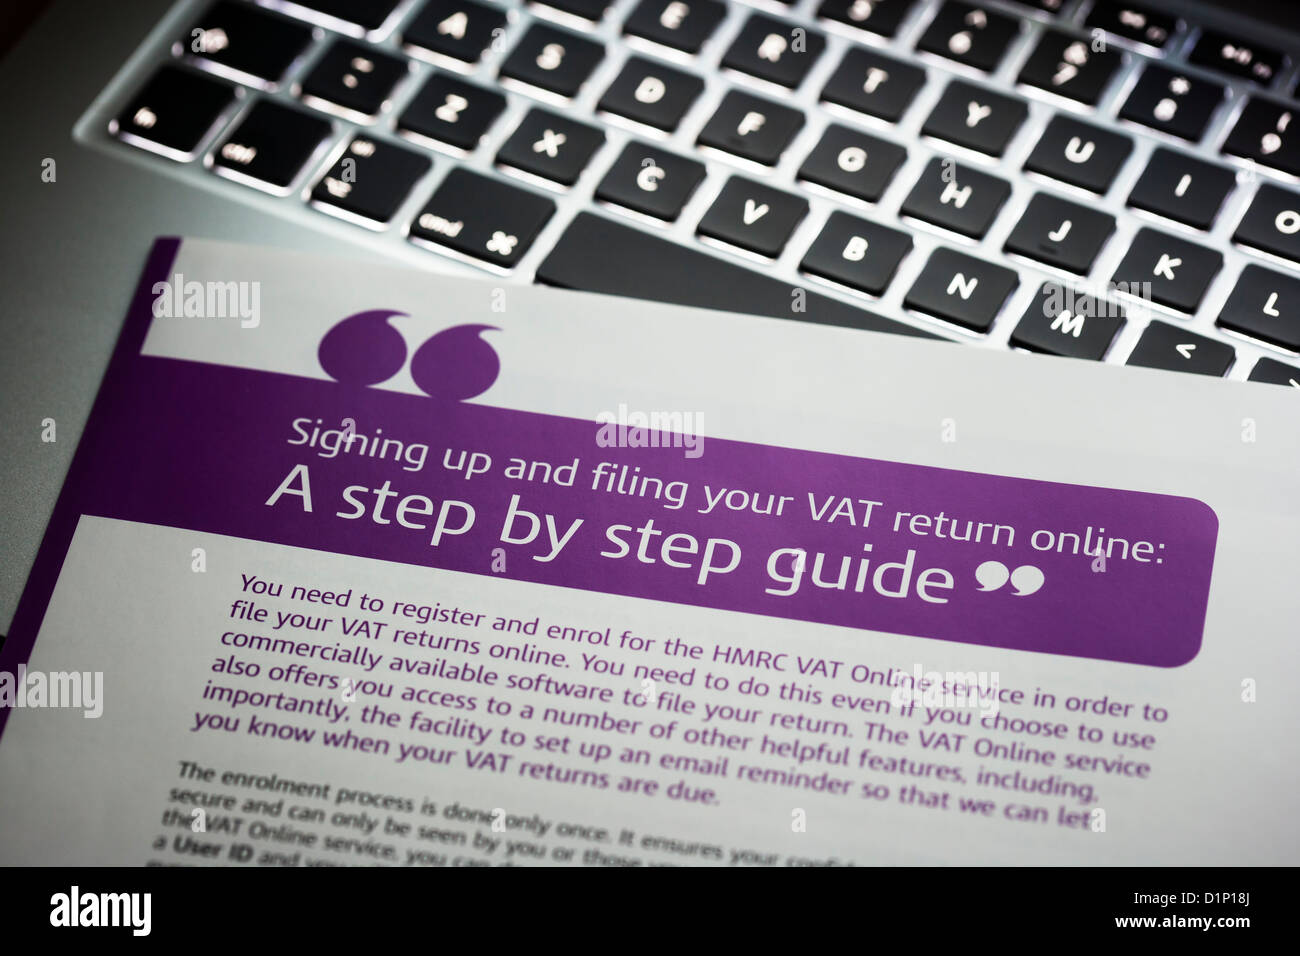 Guide to filing VAT return online Stock Photo